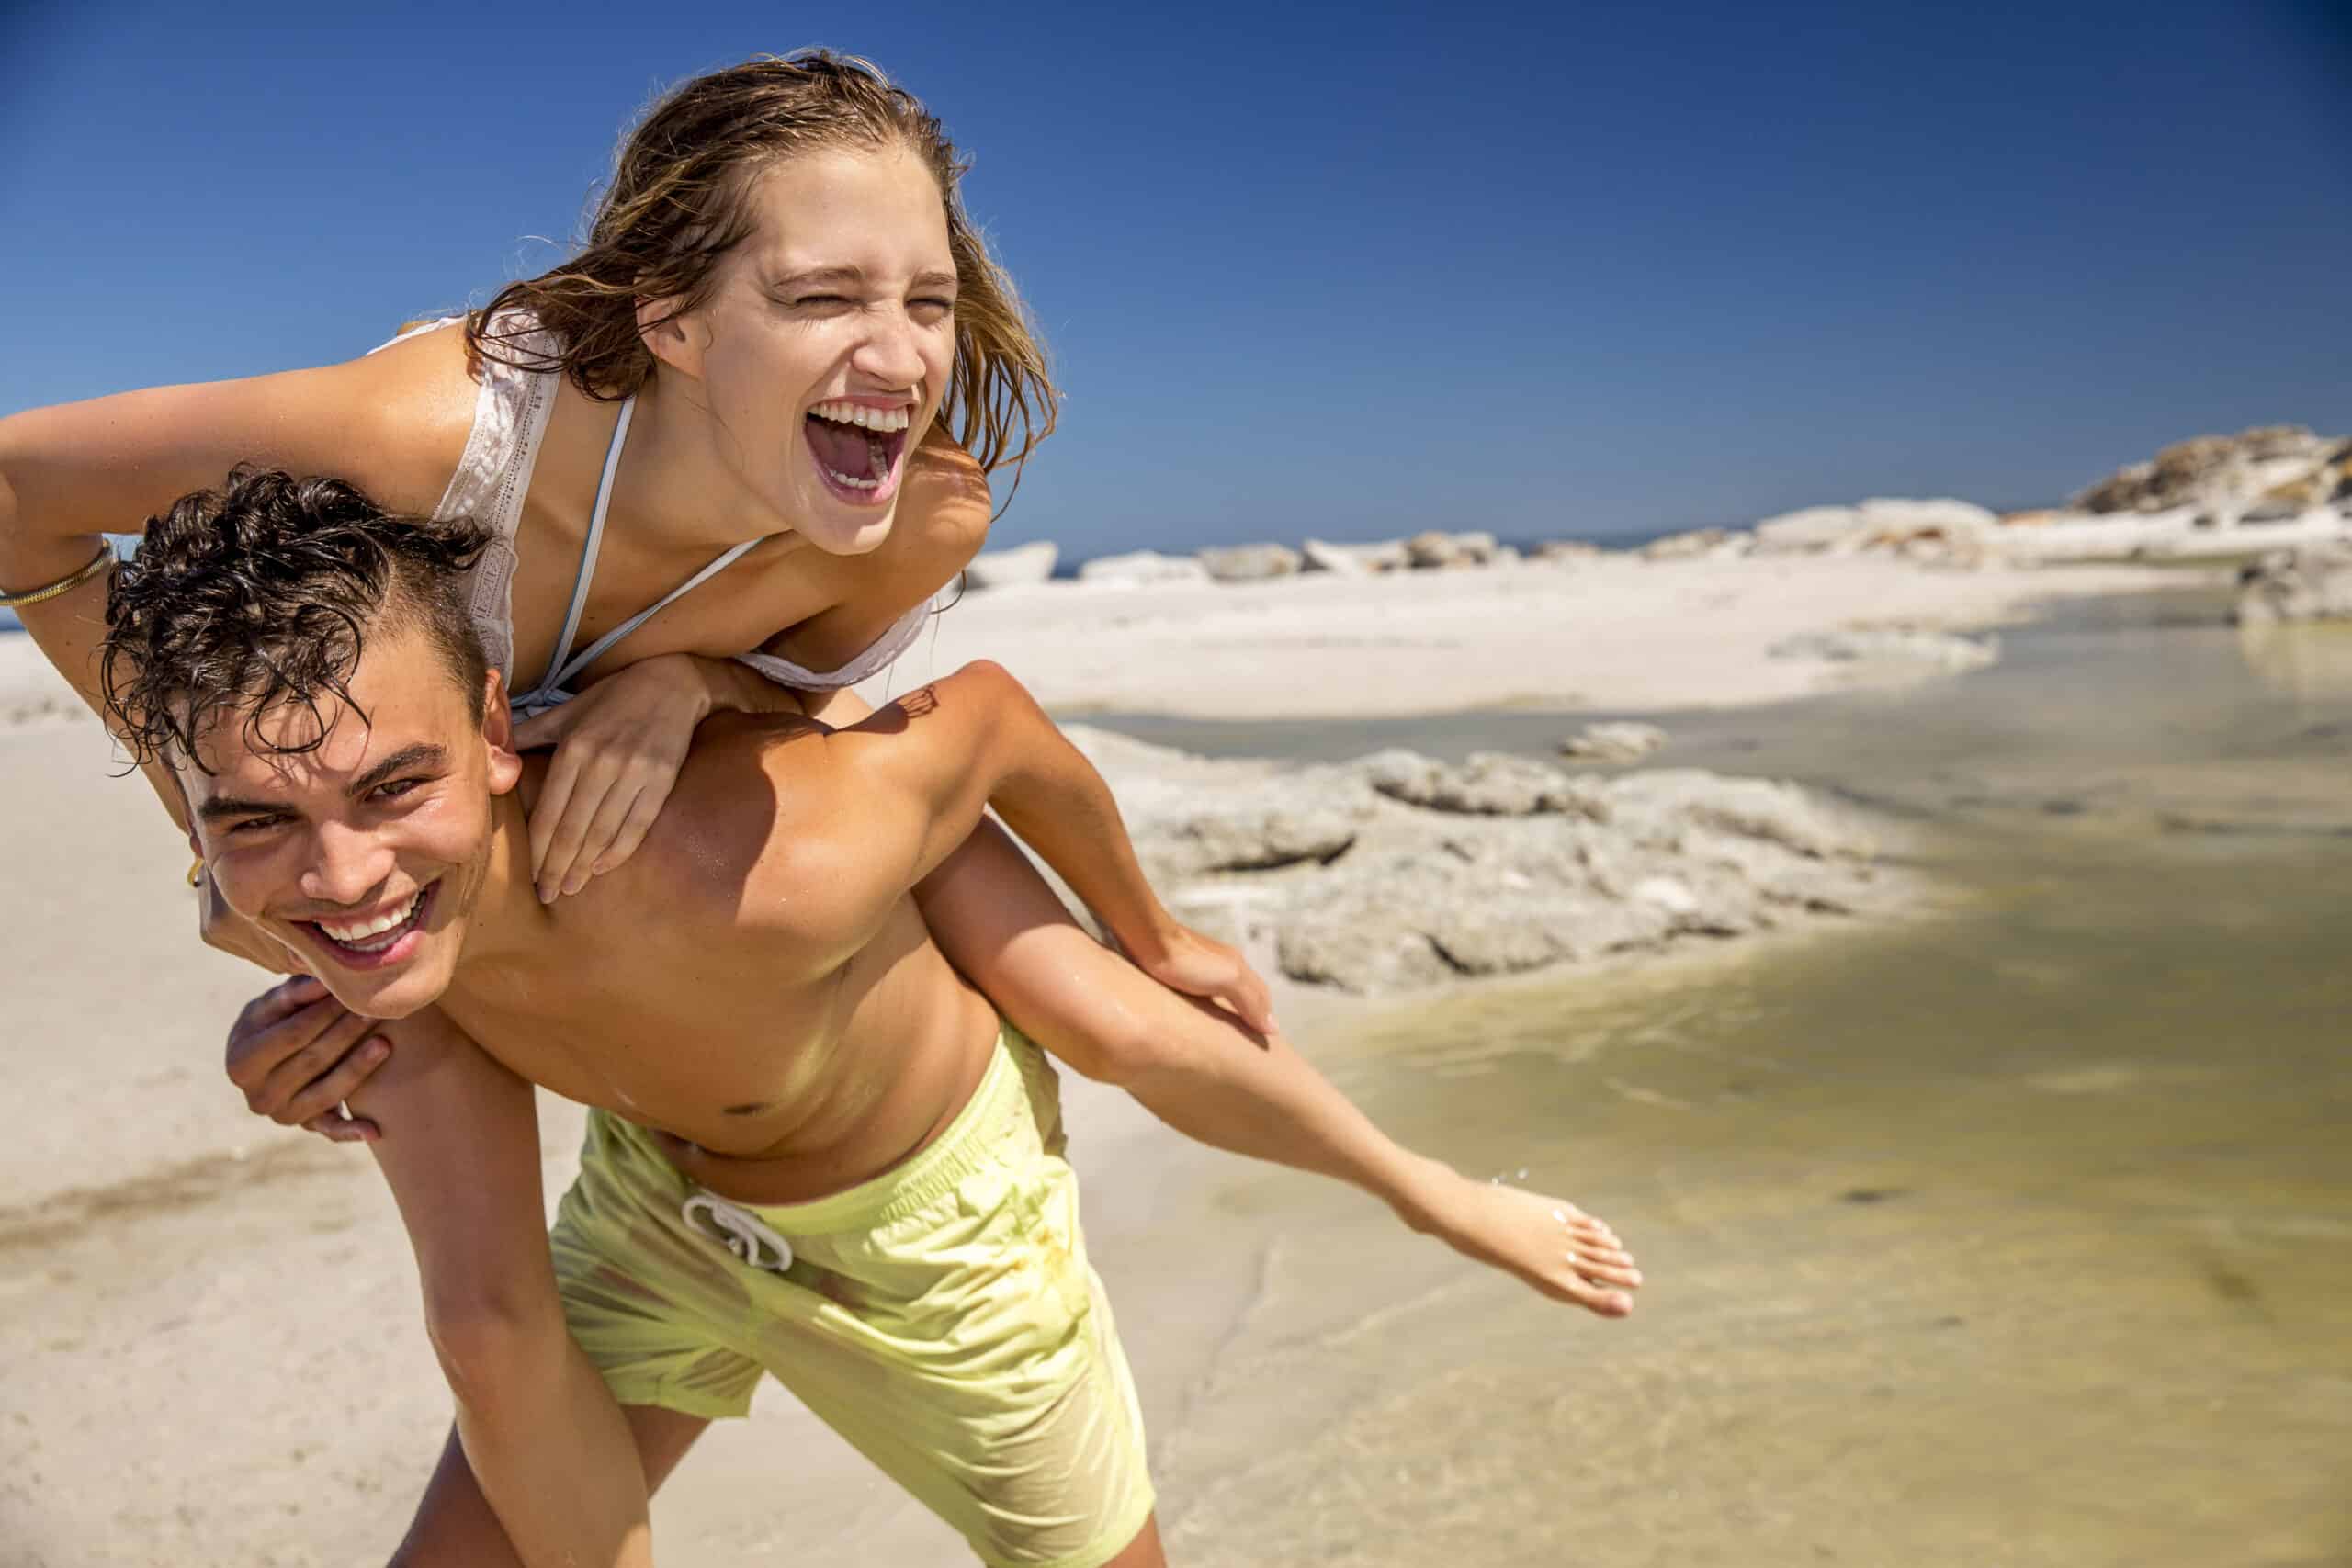 Eine fröhliche junge Frau reitet Huckepack auf einem lächelnden jungen Mann an einem sonnigen Strand. Beide tragen Badebekleidung und laufen verspielt am Ufer entlang. © Fotografie Tomas Rodriguez